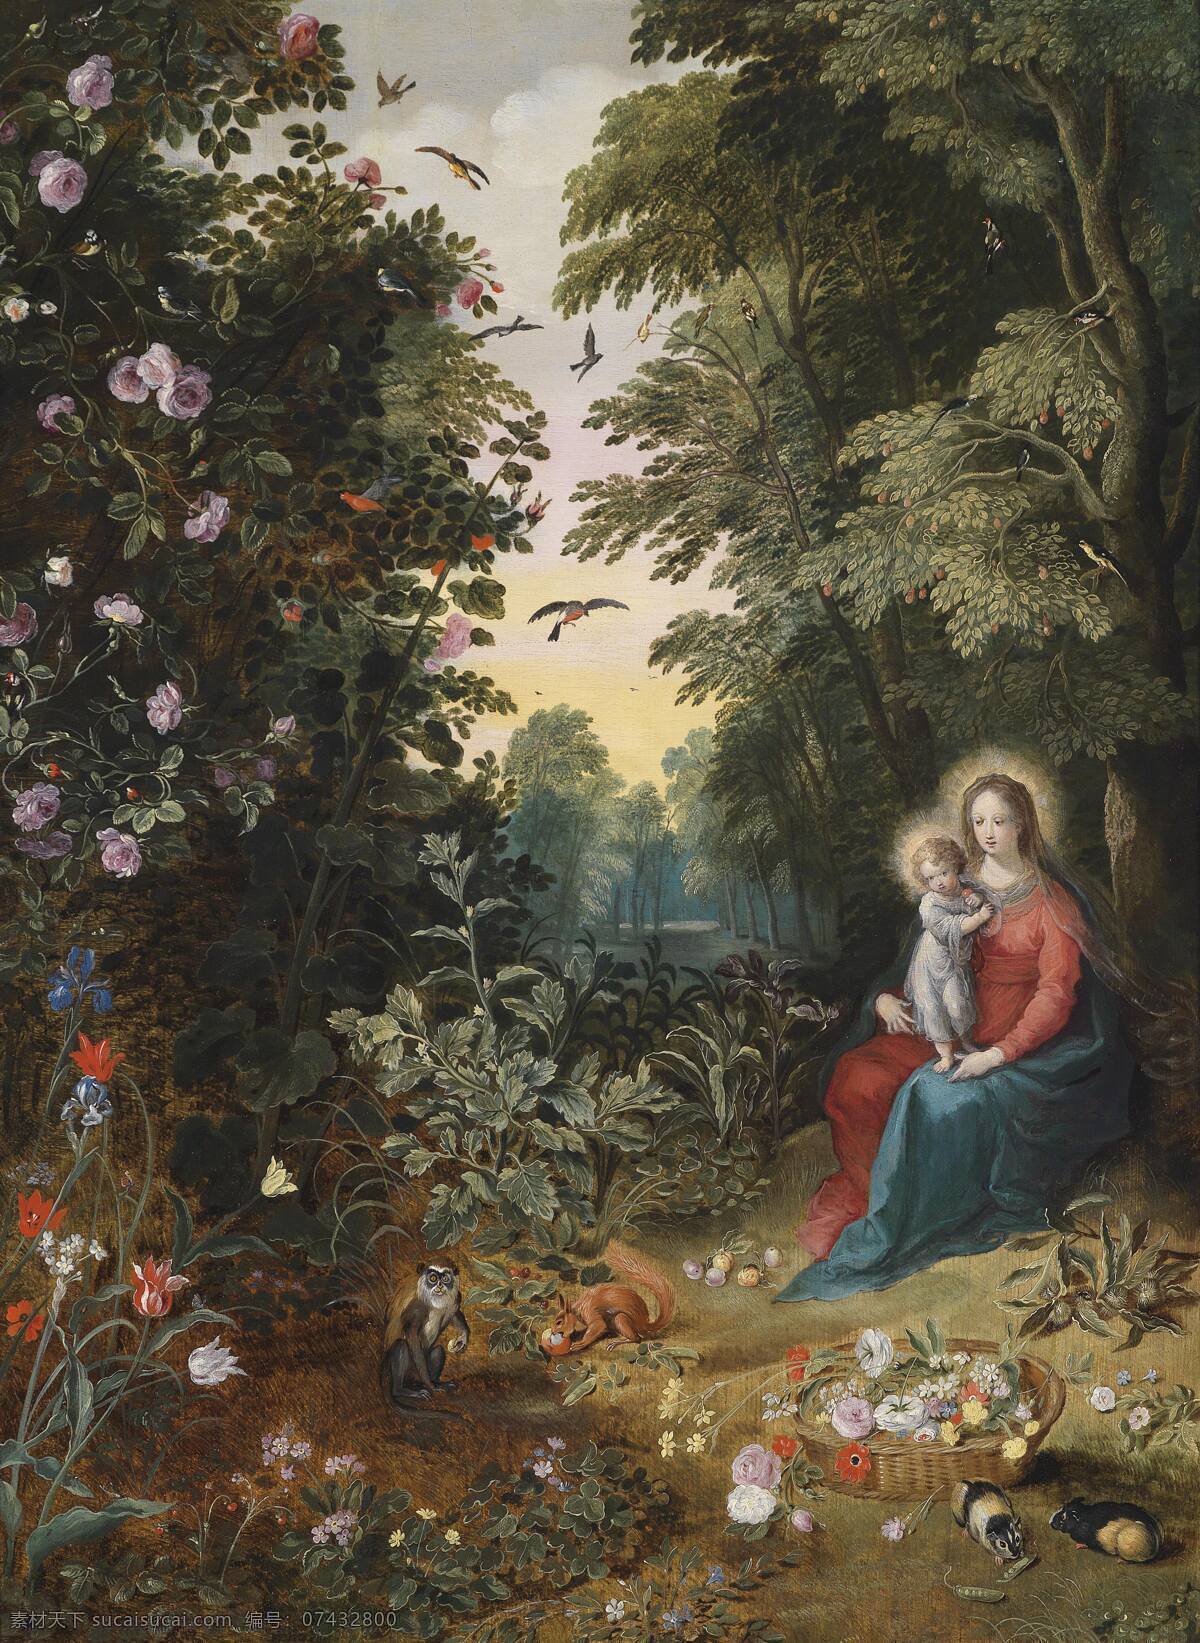 圣母与圣子 伊甸园 圣母玛丽娅 圣婴耶酥 花园 大树 19世纪油画 绘画书法 文化艺术